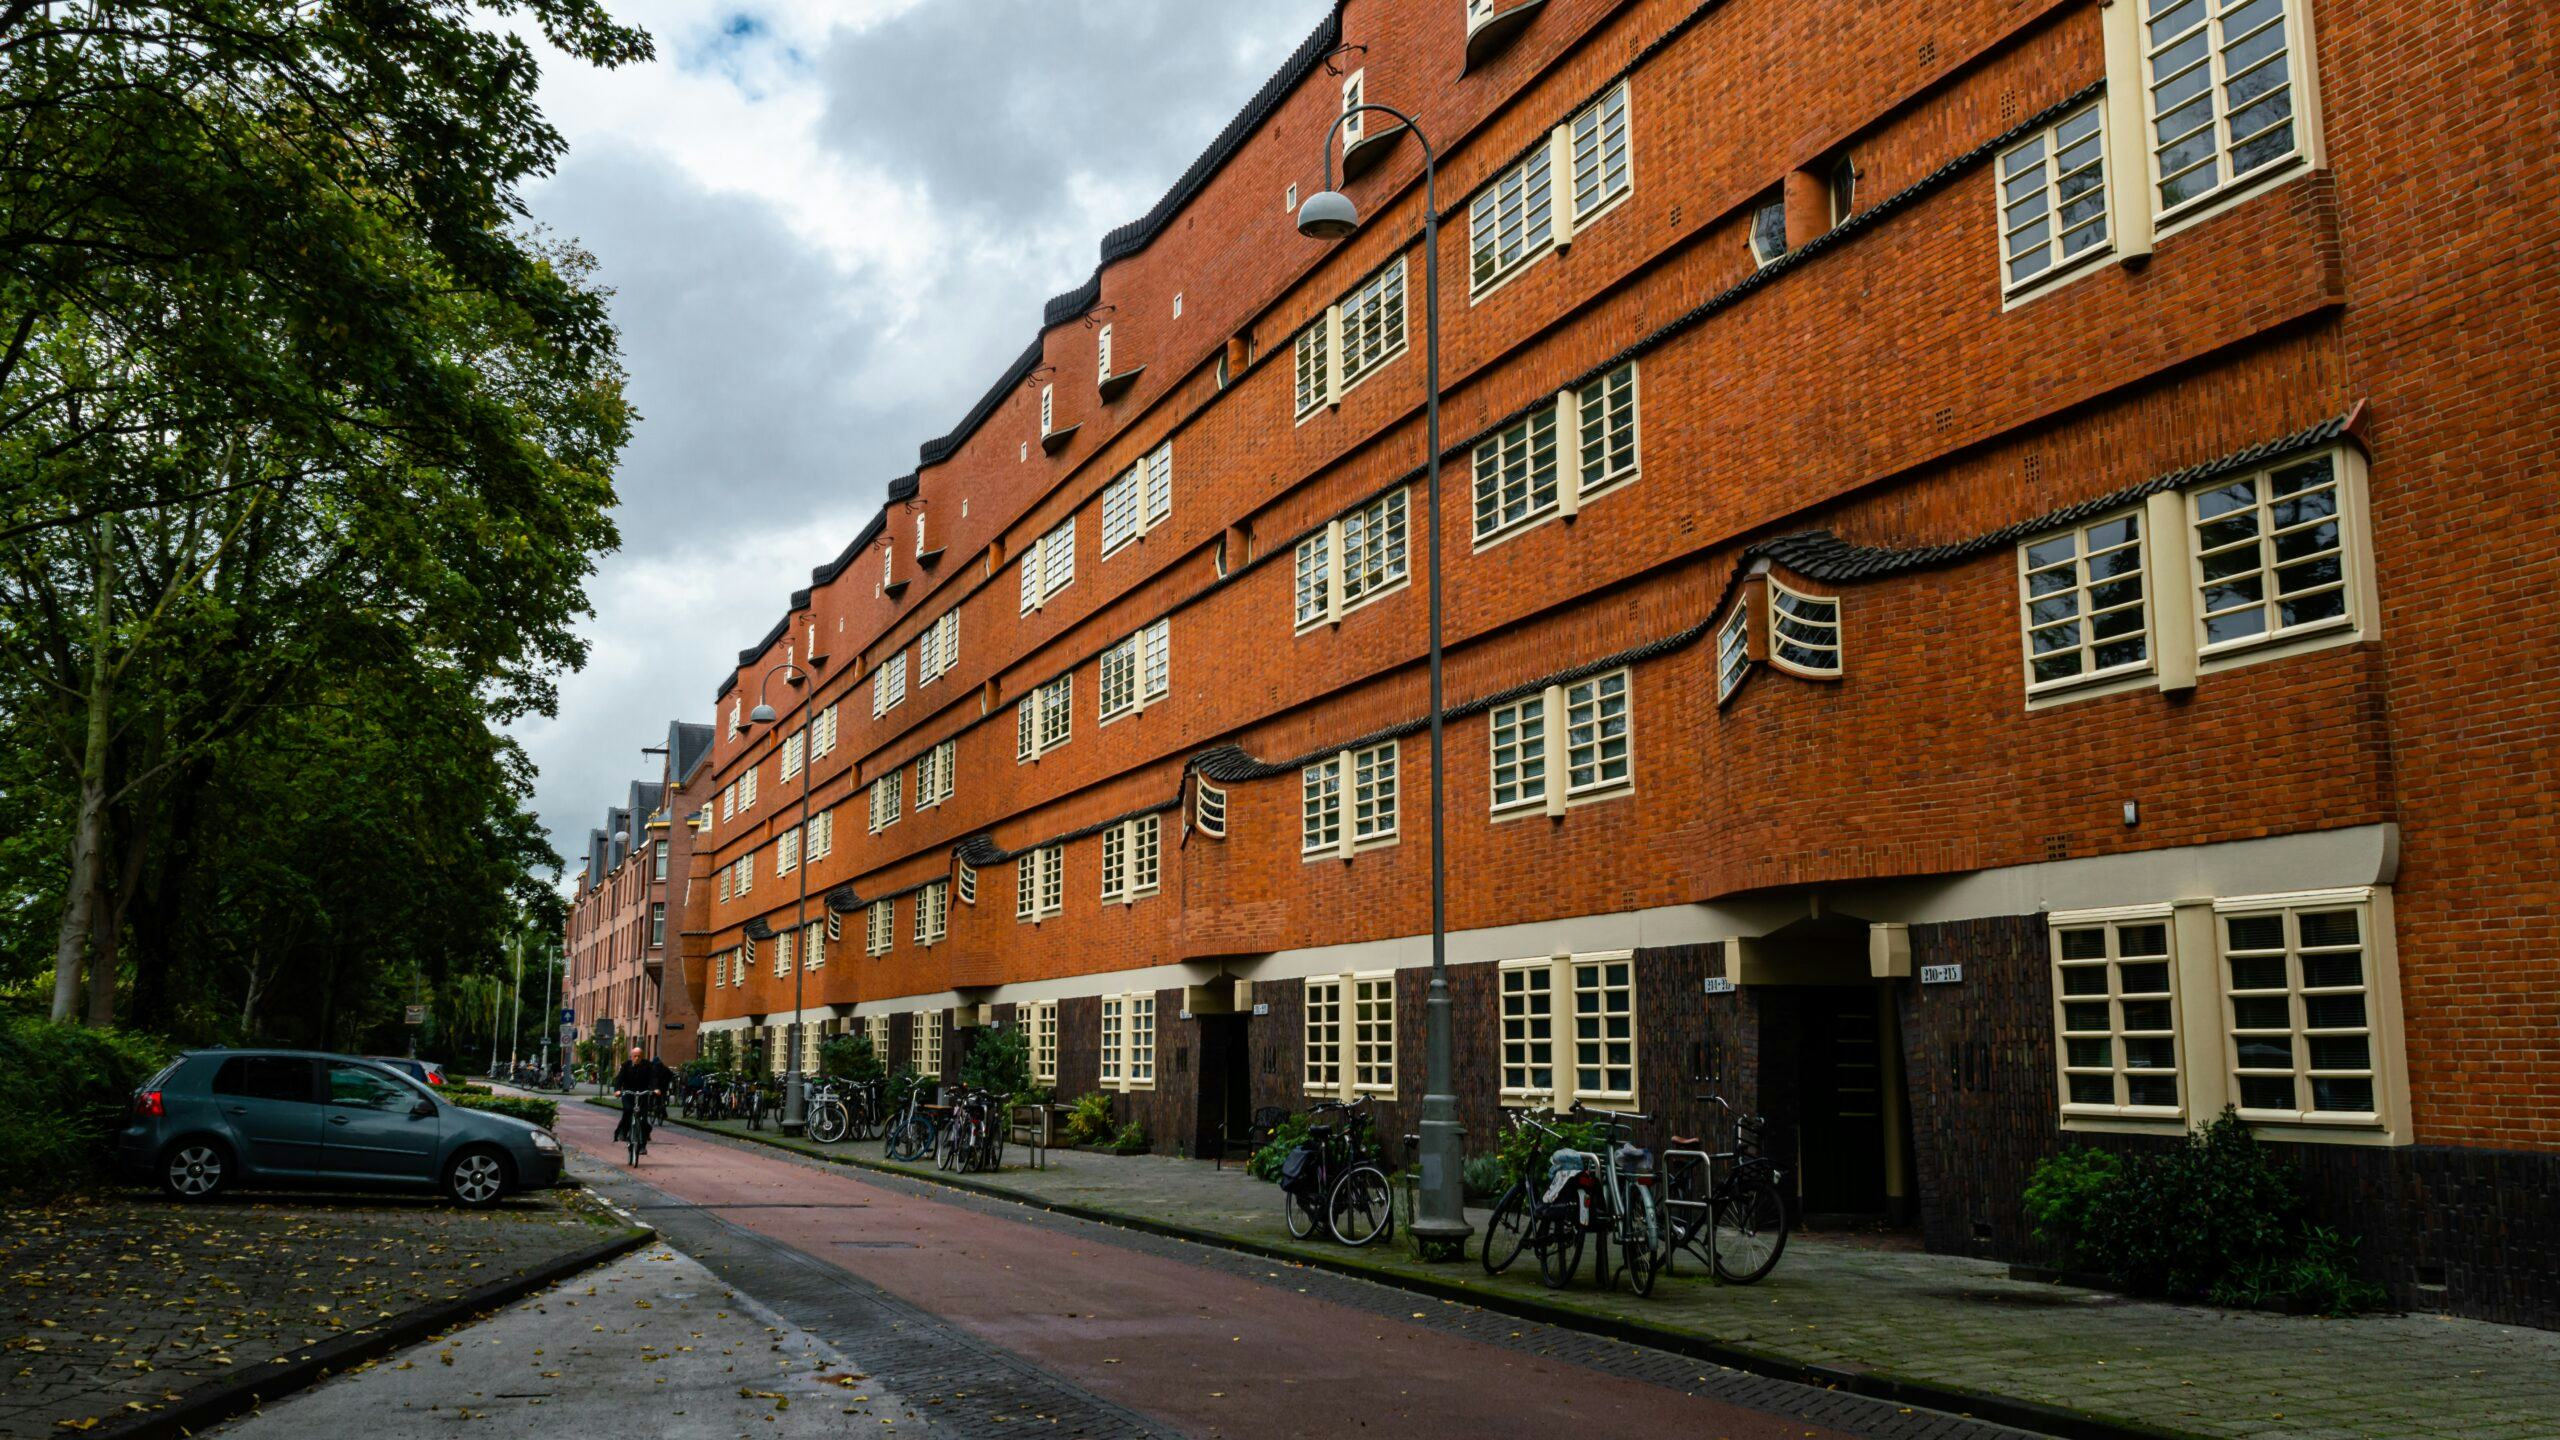 Verkoop sociale huurwoningen Amsterdam mag doorgaan, wel onder strengere voorwaarden